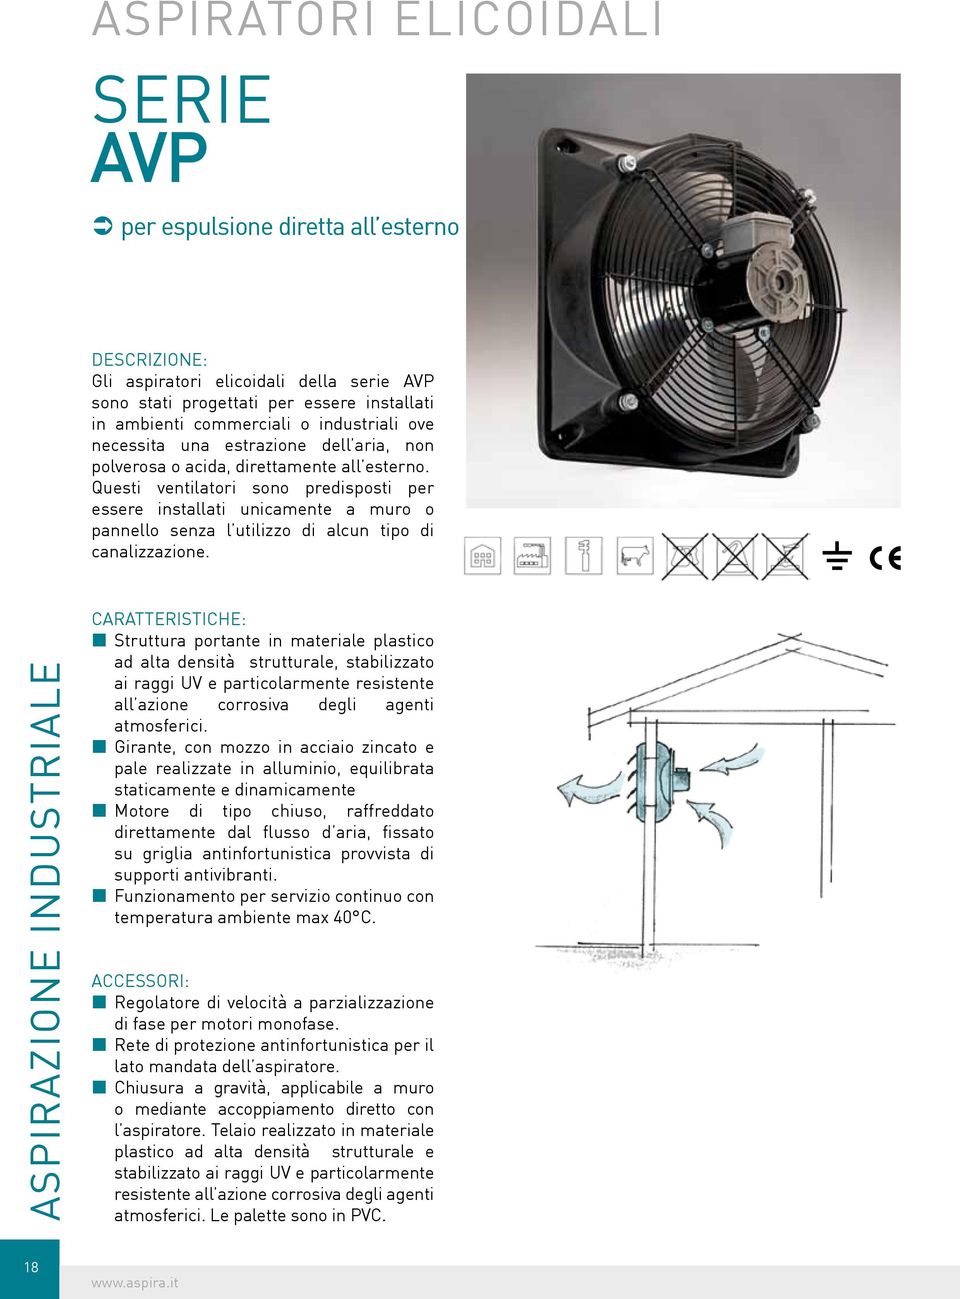 Questi ventilatori sono predisposti per essere installati unicamente a muro o pannello senza l utilizzo di alcun tipo di canalizzazione.